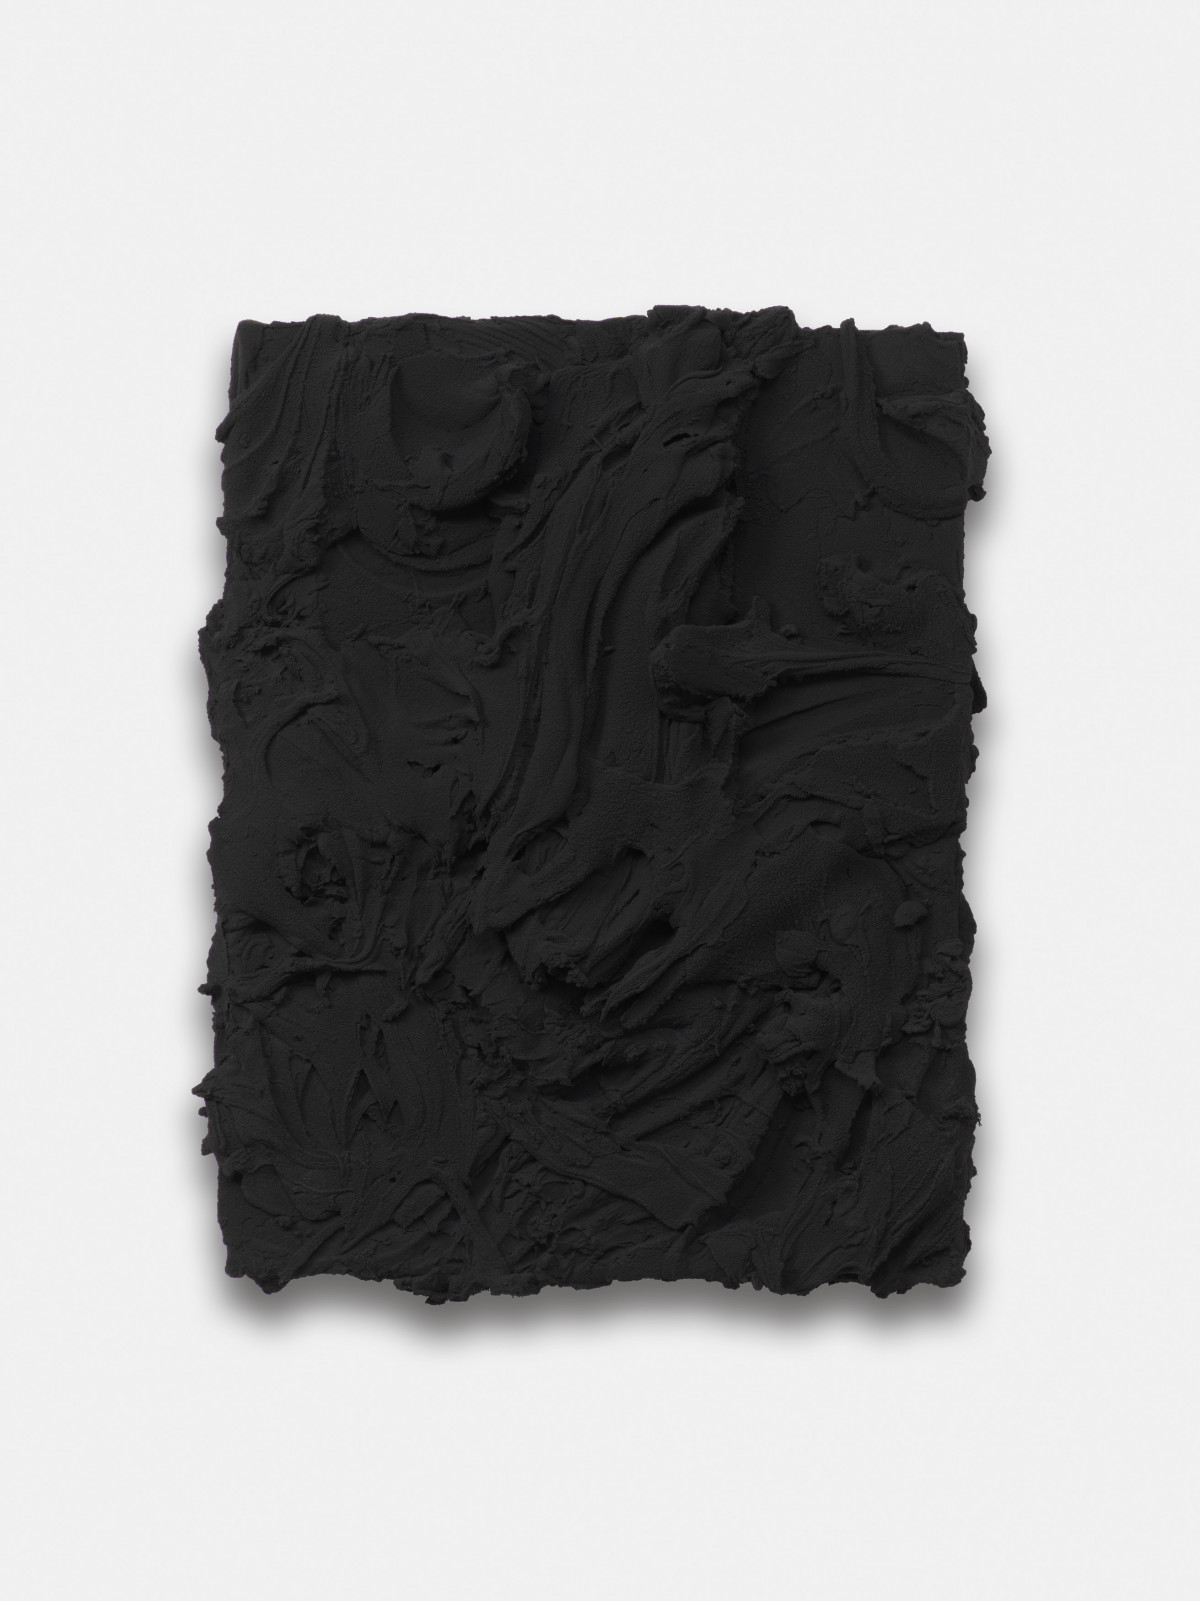 Jason Martin, ‘Avarice (Spinel black)’, 2023, Mischtechnik auf Aluminium